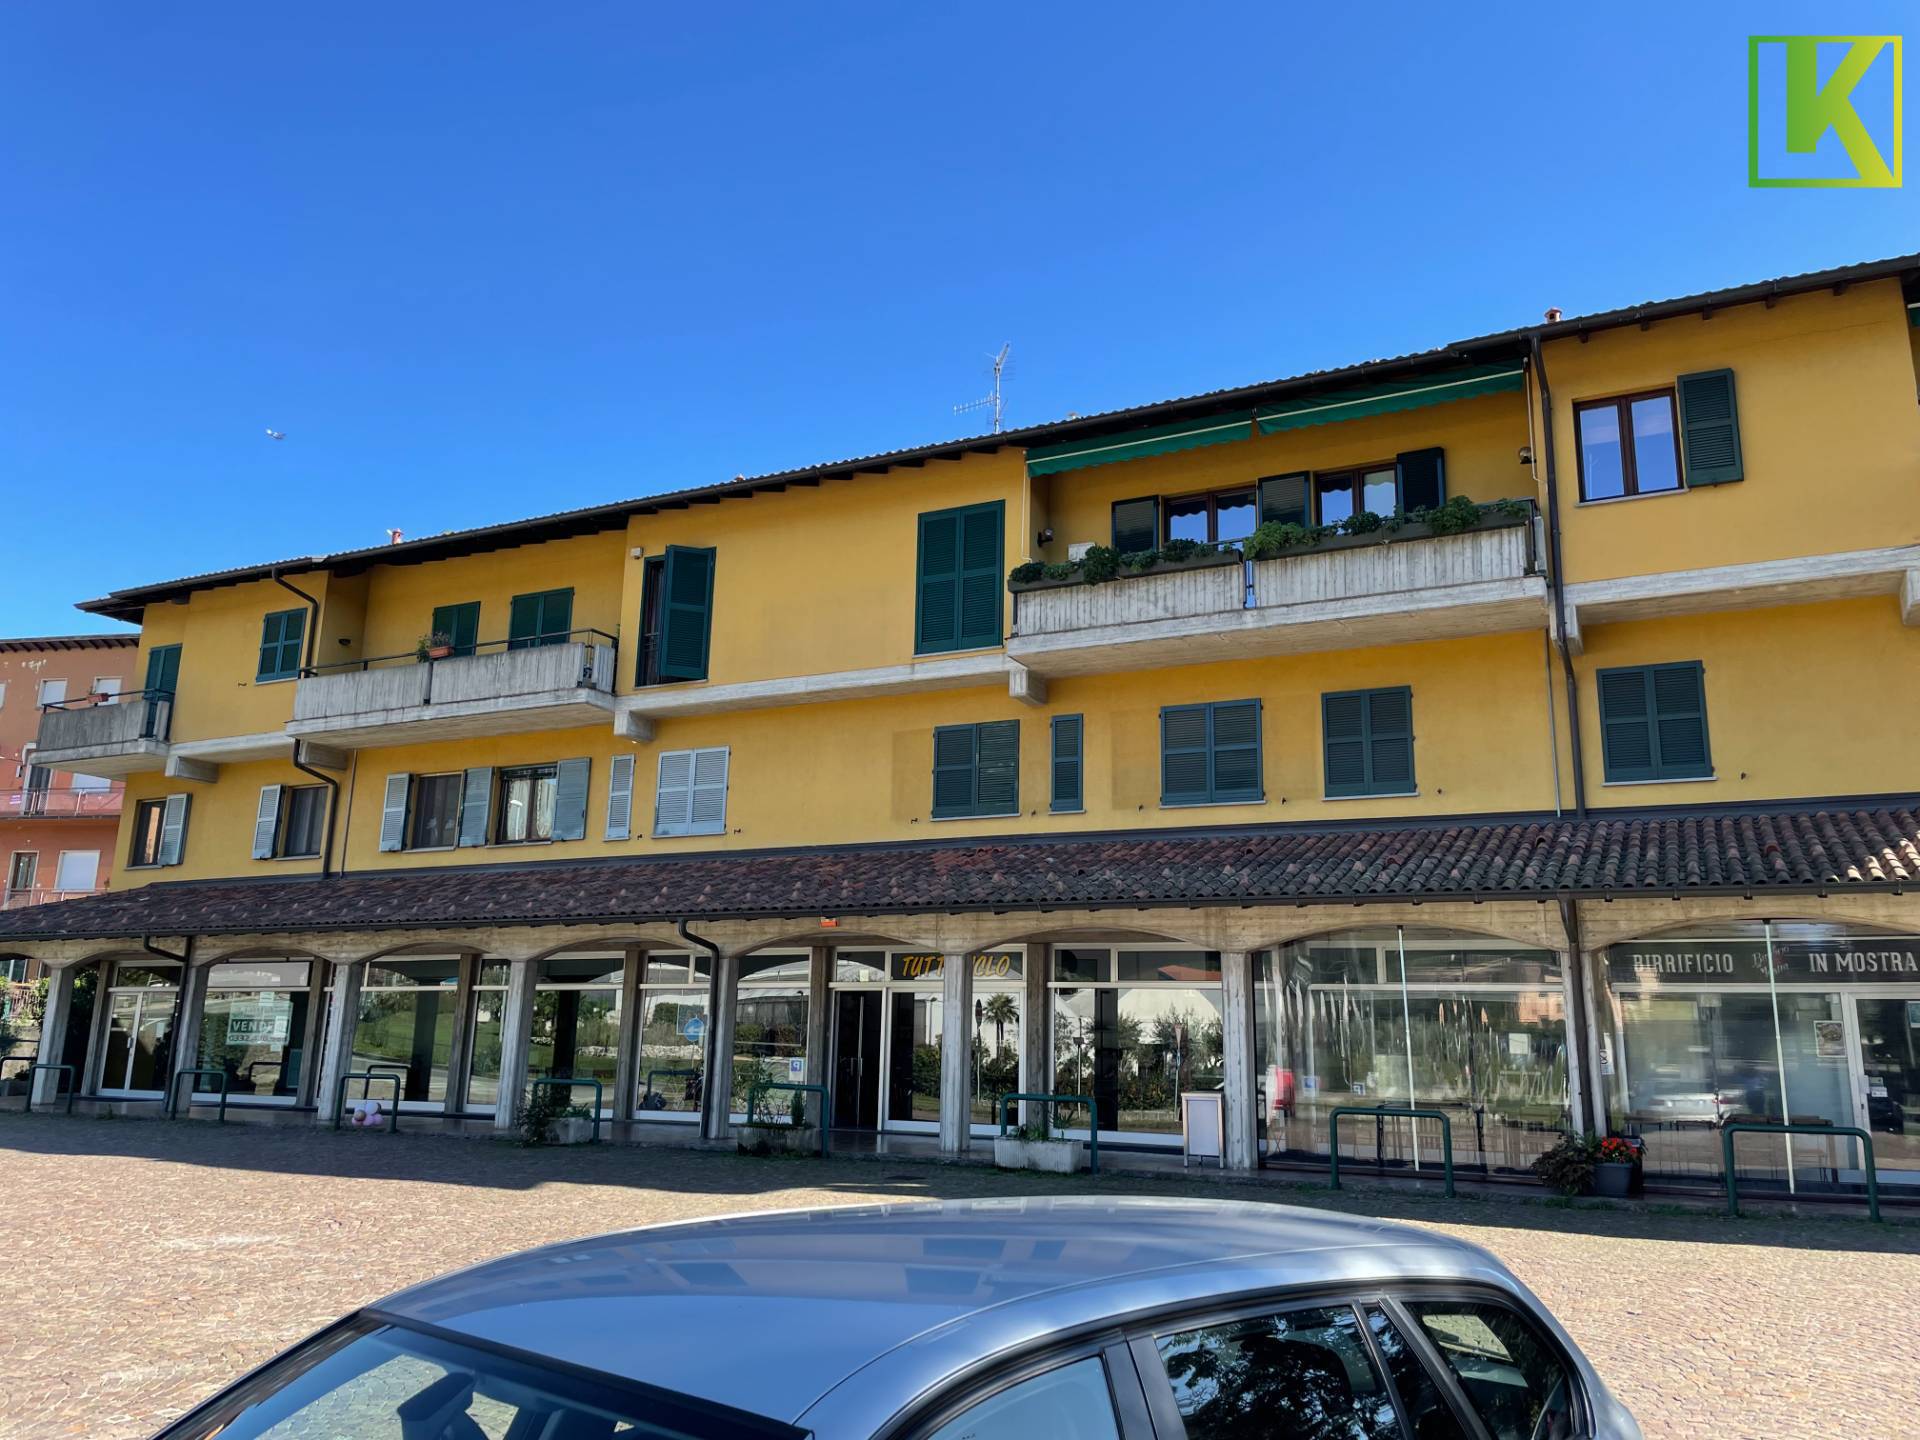 Negozio / Locale in vendita a Induno Olona, 9999 locali, prezzo € 59.000 | PortaleAgenzieImmobiliari.it